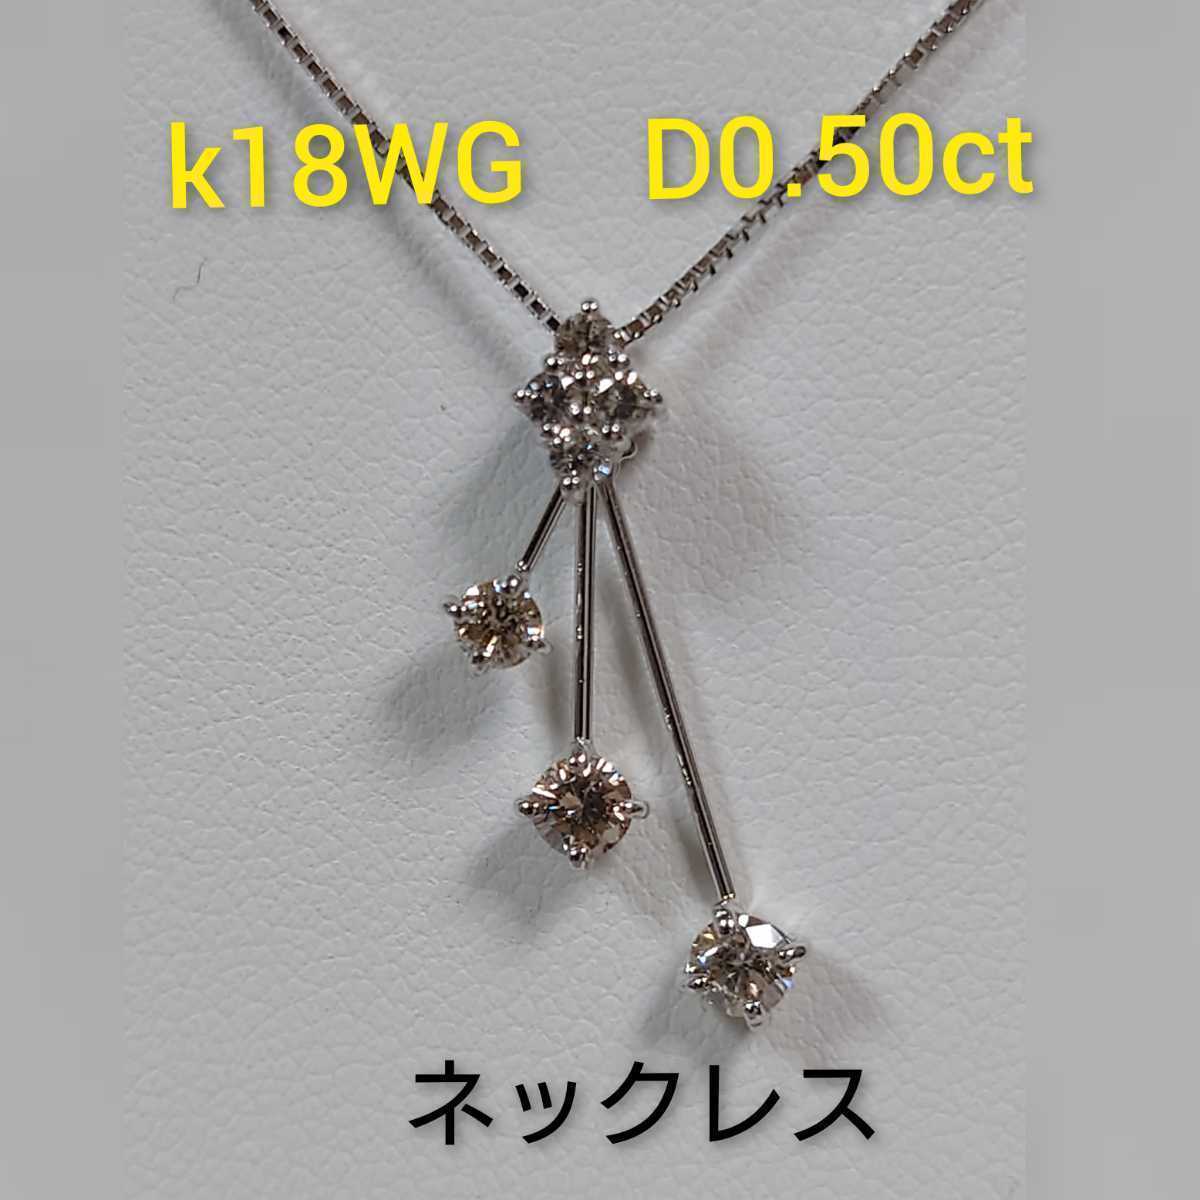 ダイヤネックレス K18WG×750 3.6g ダイヤモンド2.00カラット 